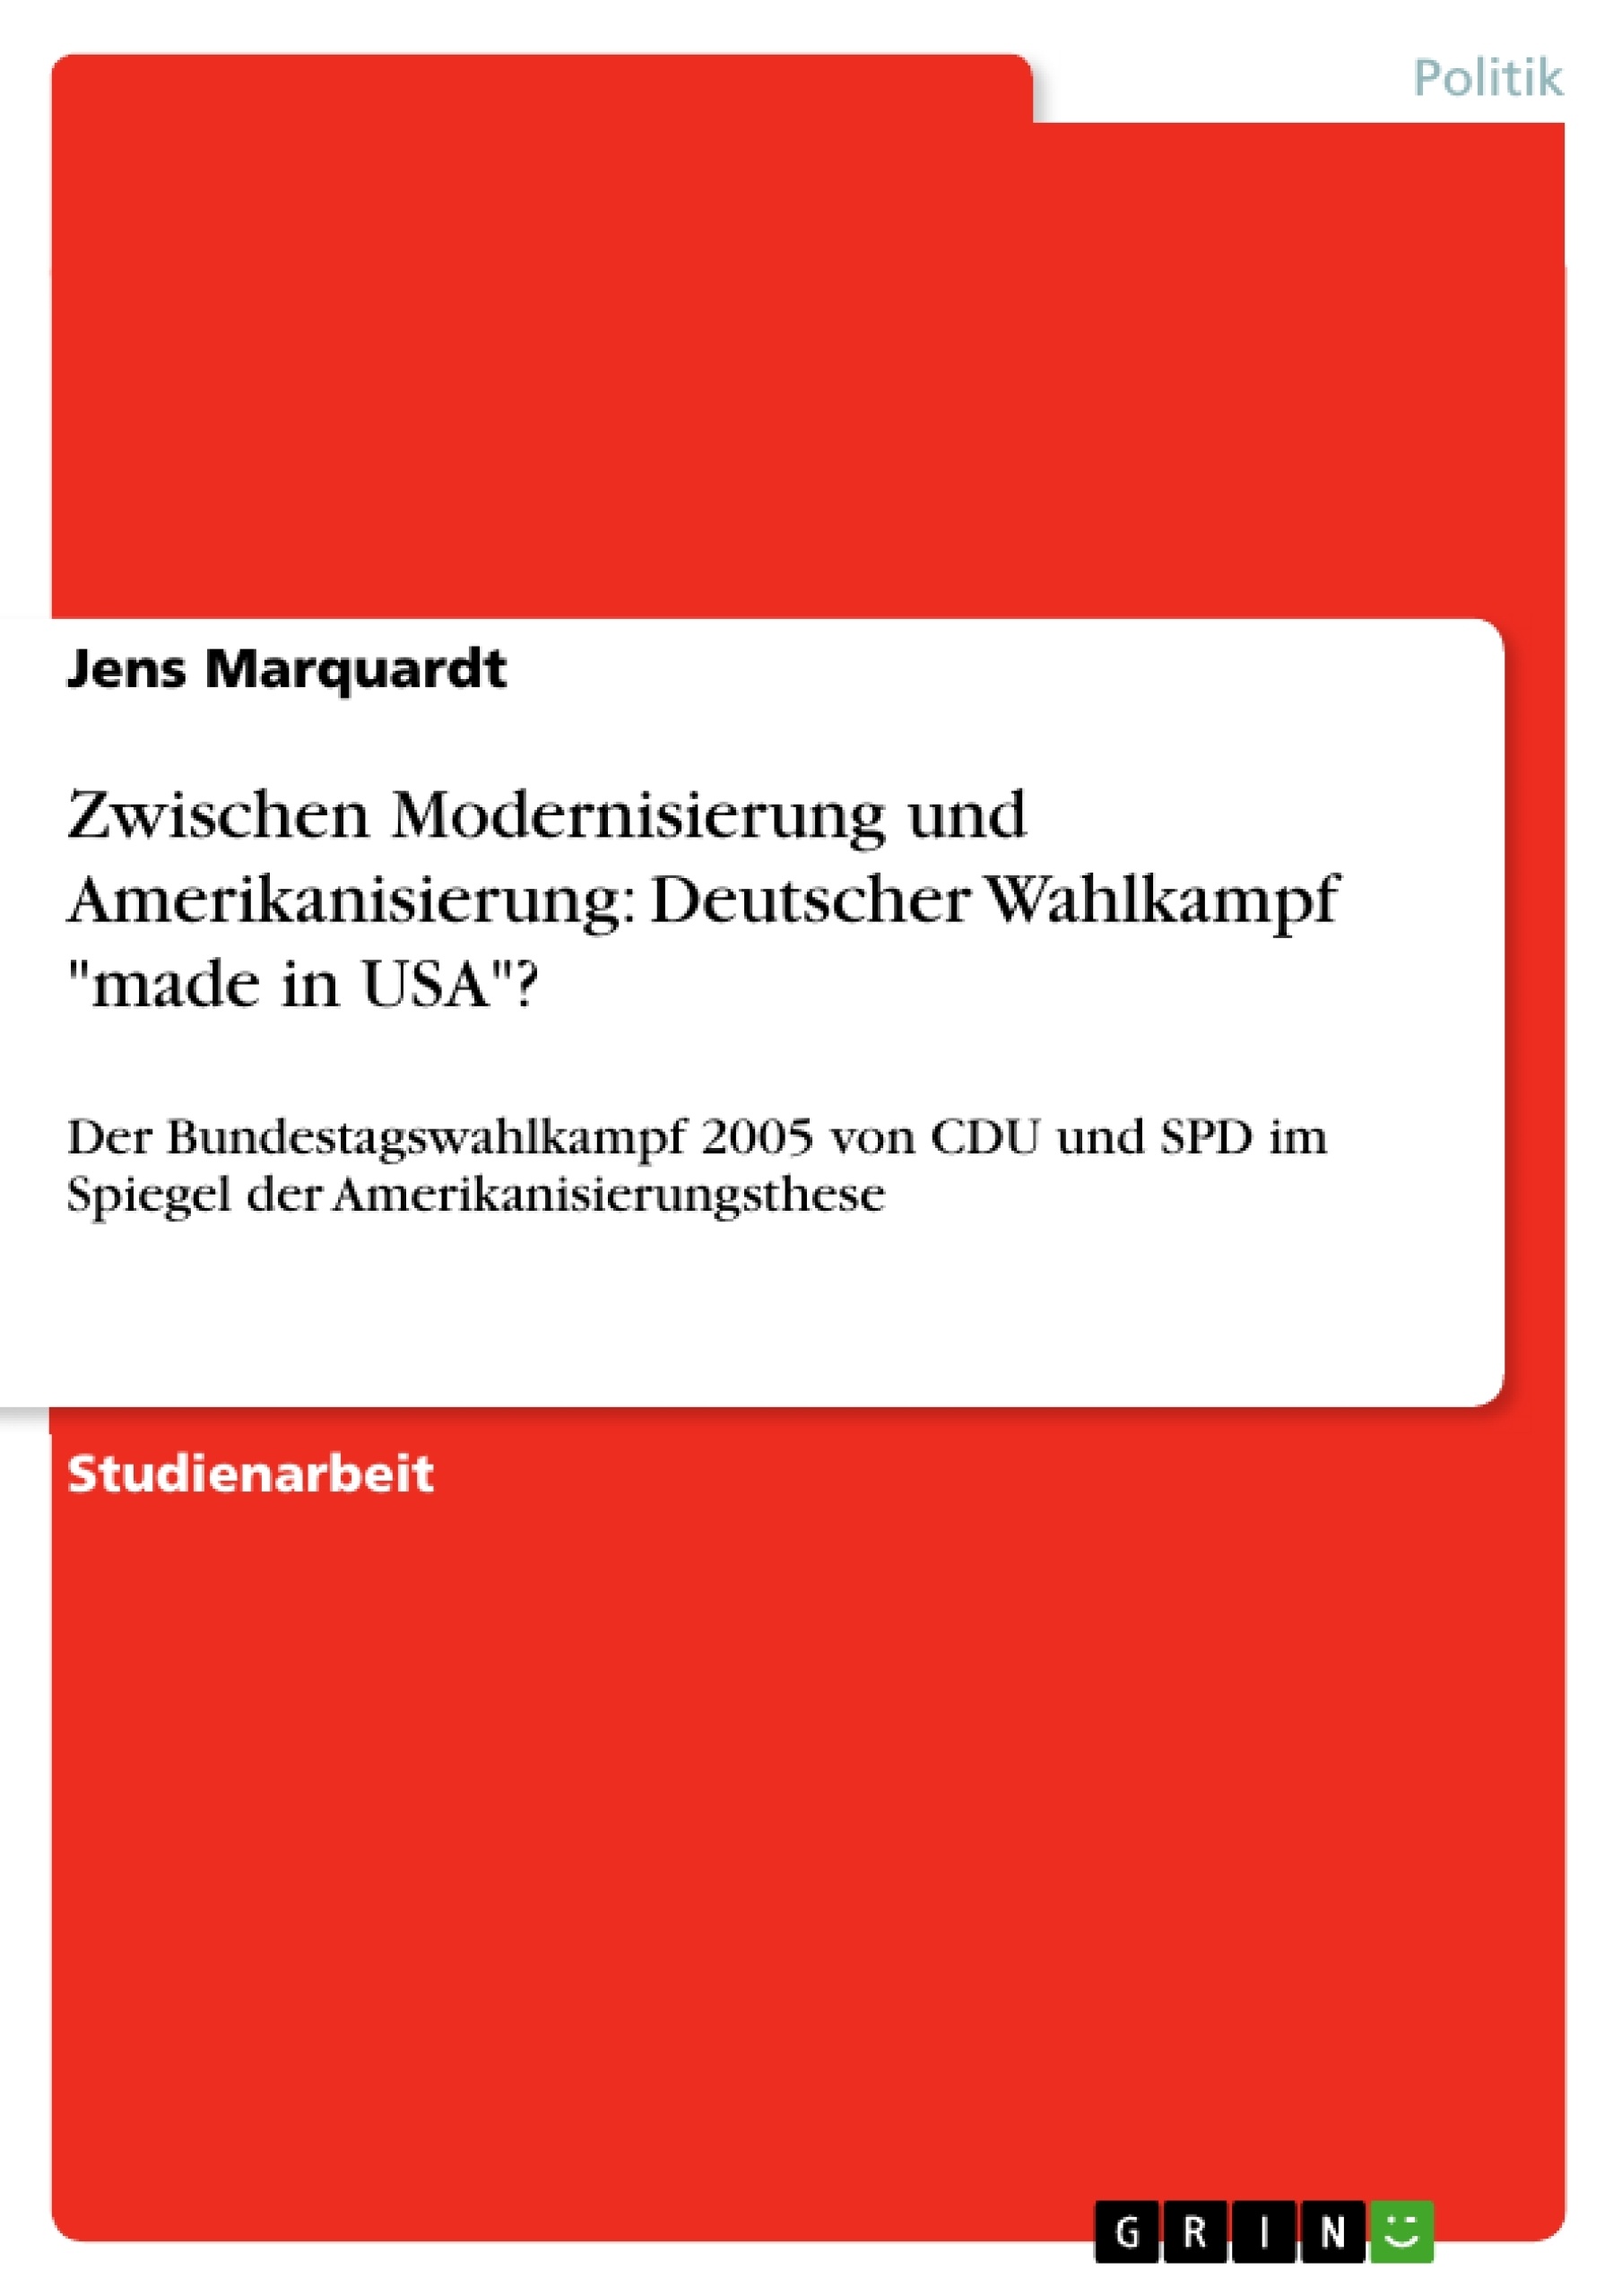 Titre: Zwischen Modernisierung und Amerikanisierung: Deutscher Wahlkampf "made in USA"?